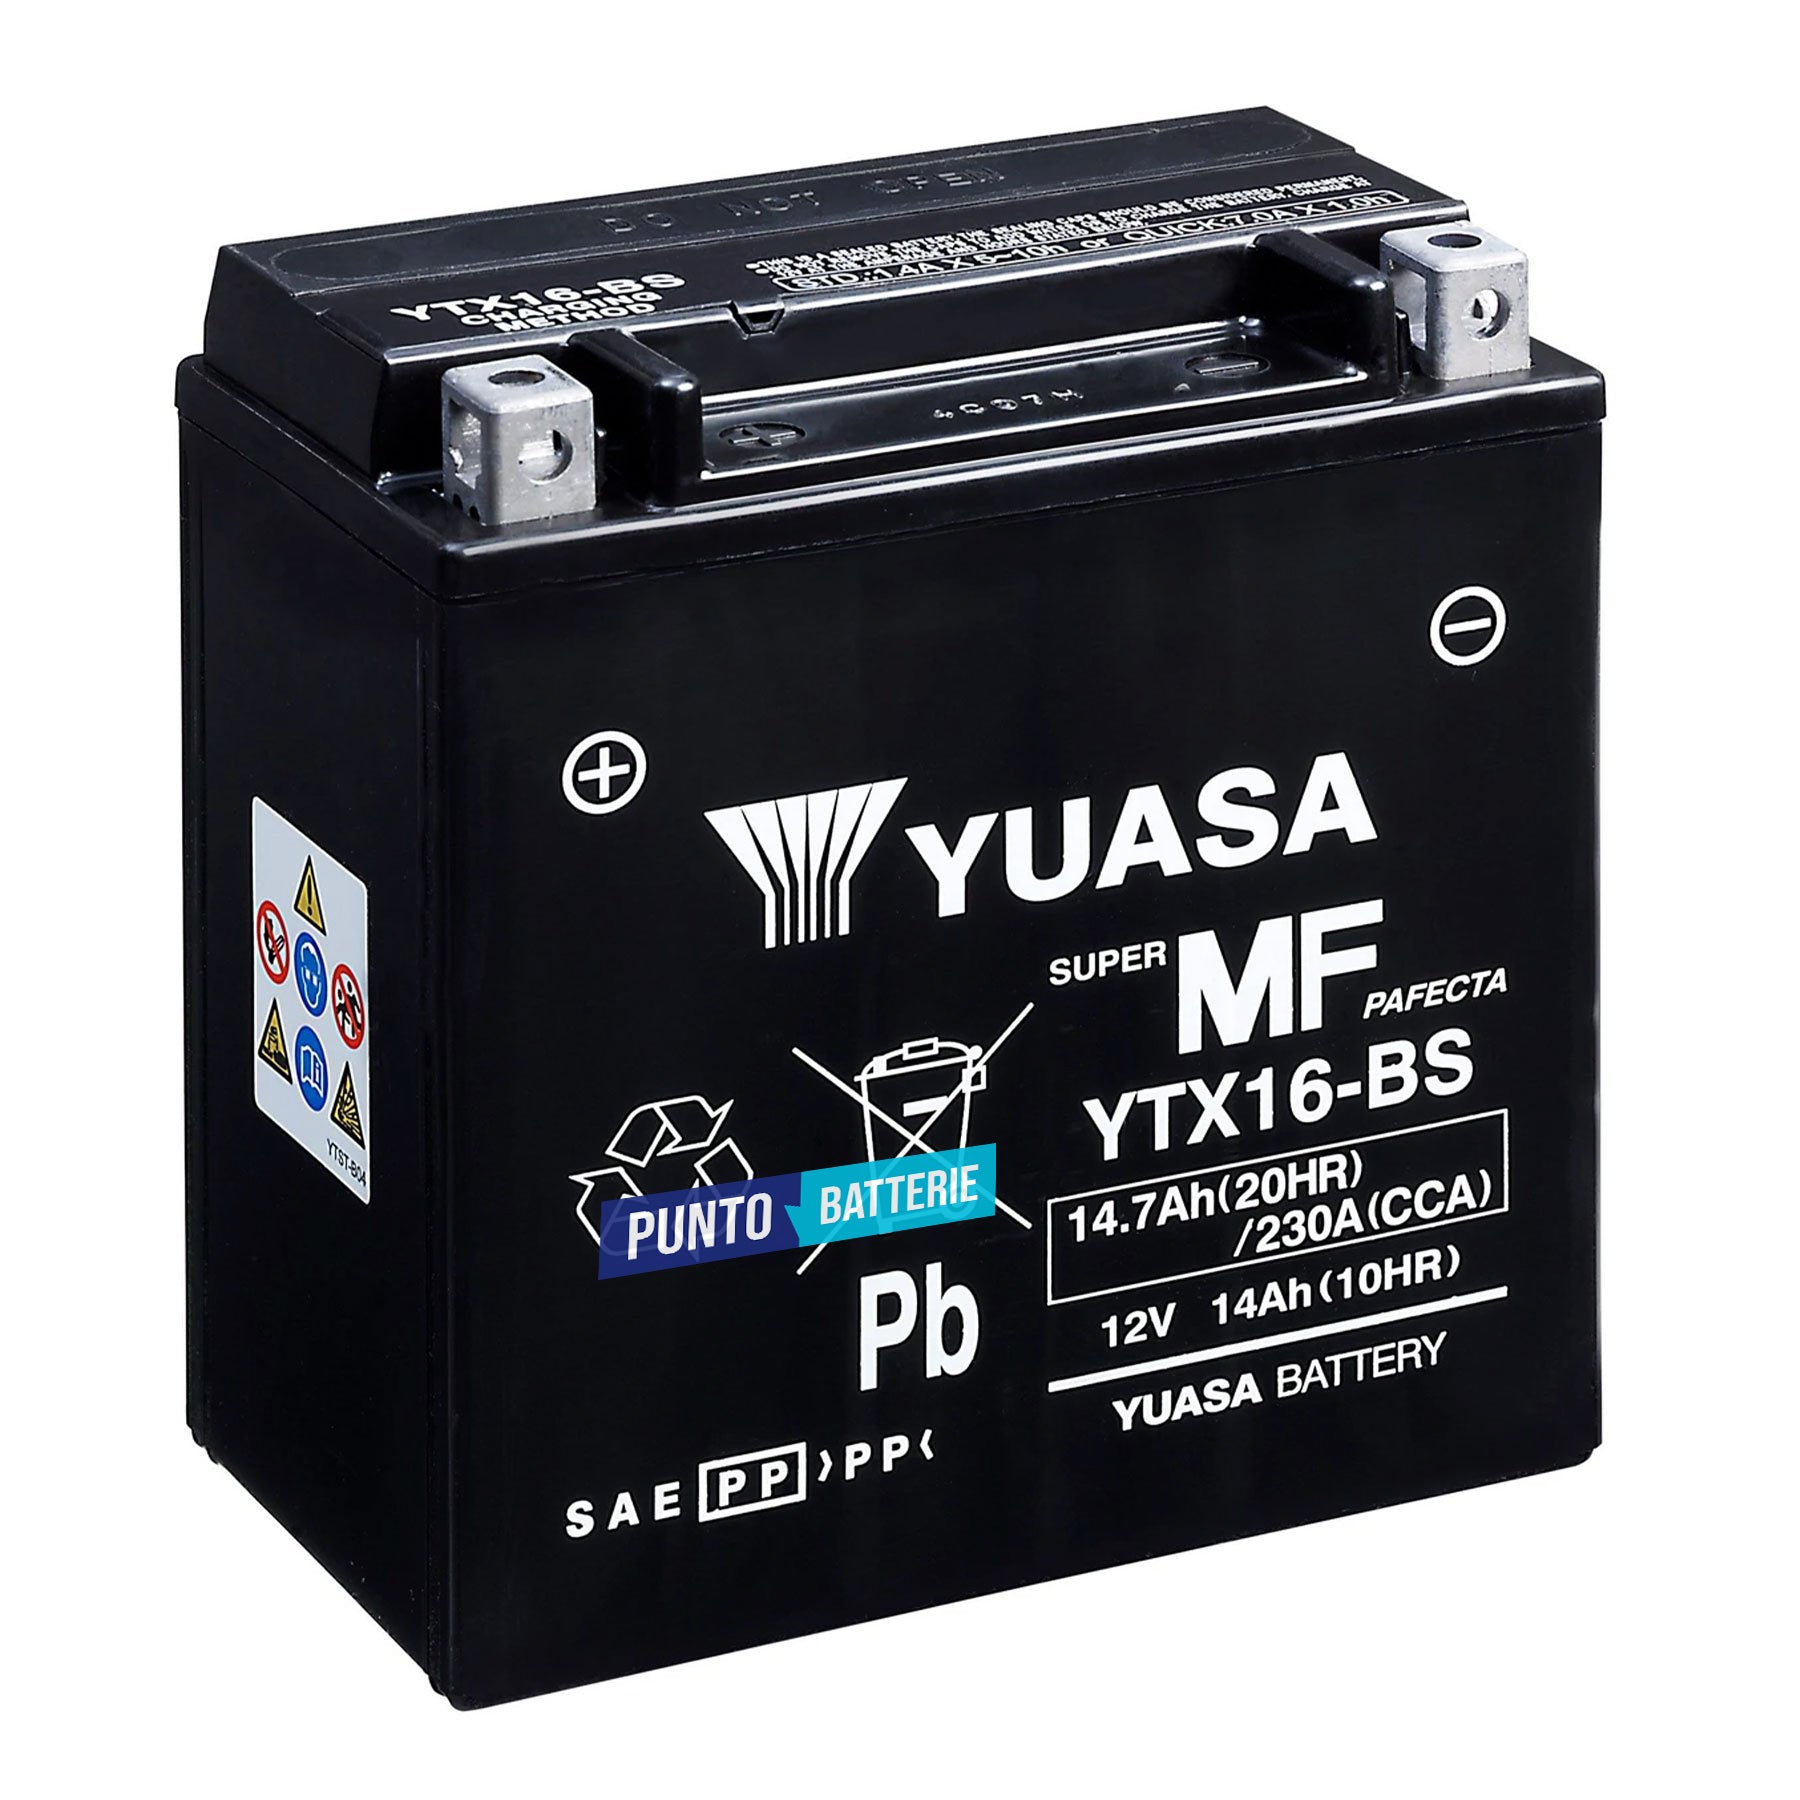 Batteria originale Yuasa YTX YTX16-BS, dimensioni 150 x 87 x 161, polo positivo a sinistra, 12 volt, 14 amperora, 230 ampere. Batteria per moto, scooter e powersport.